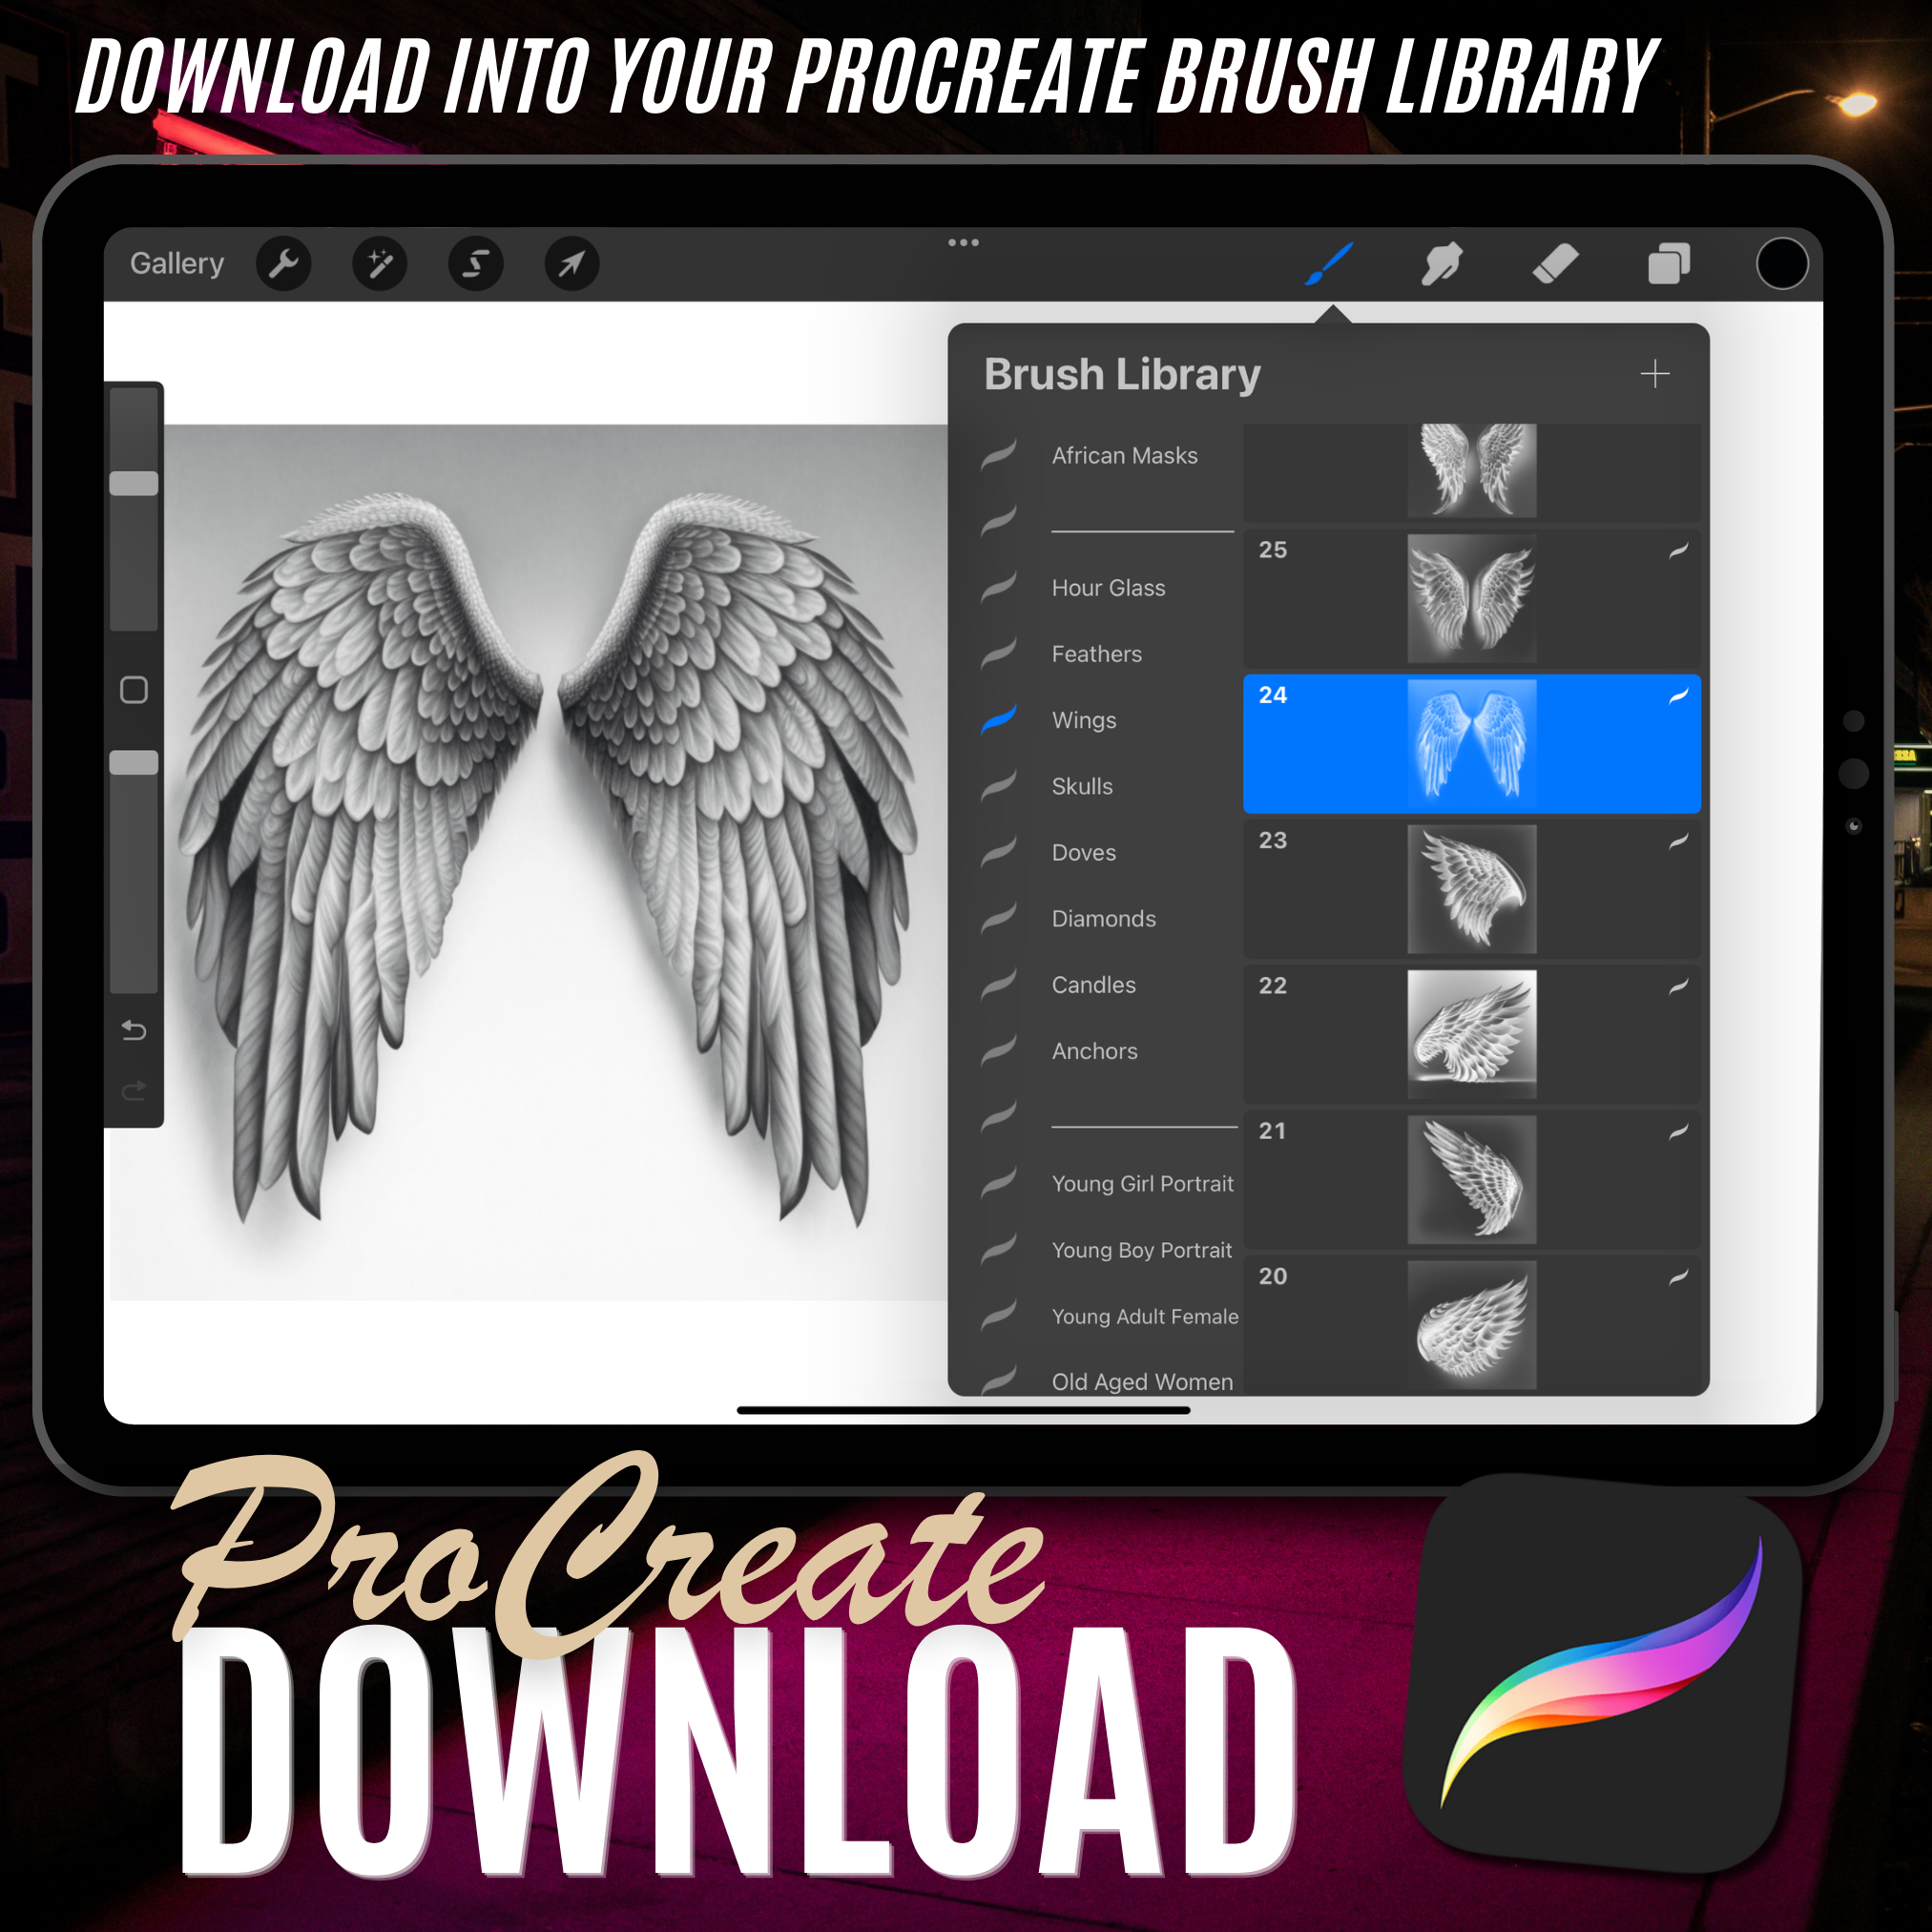 Digitale Wings-Tattoo-Element-Designsammlung: 100 Procreate- und Skizzenbuchbilder